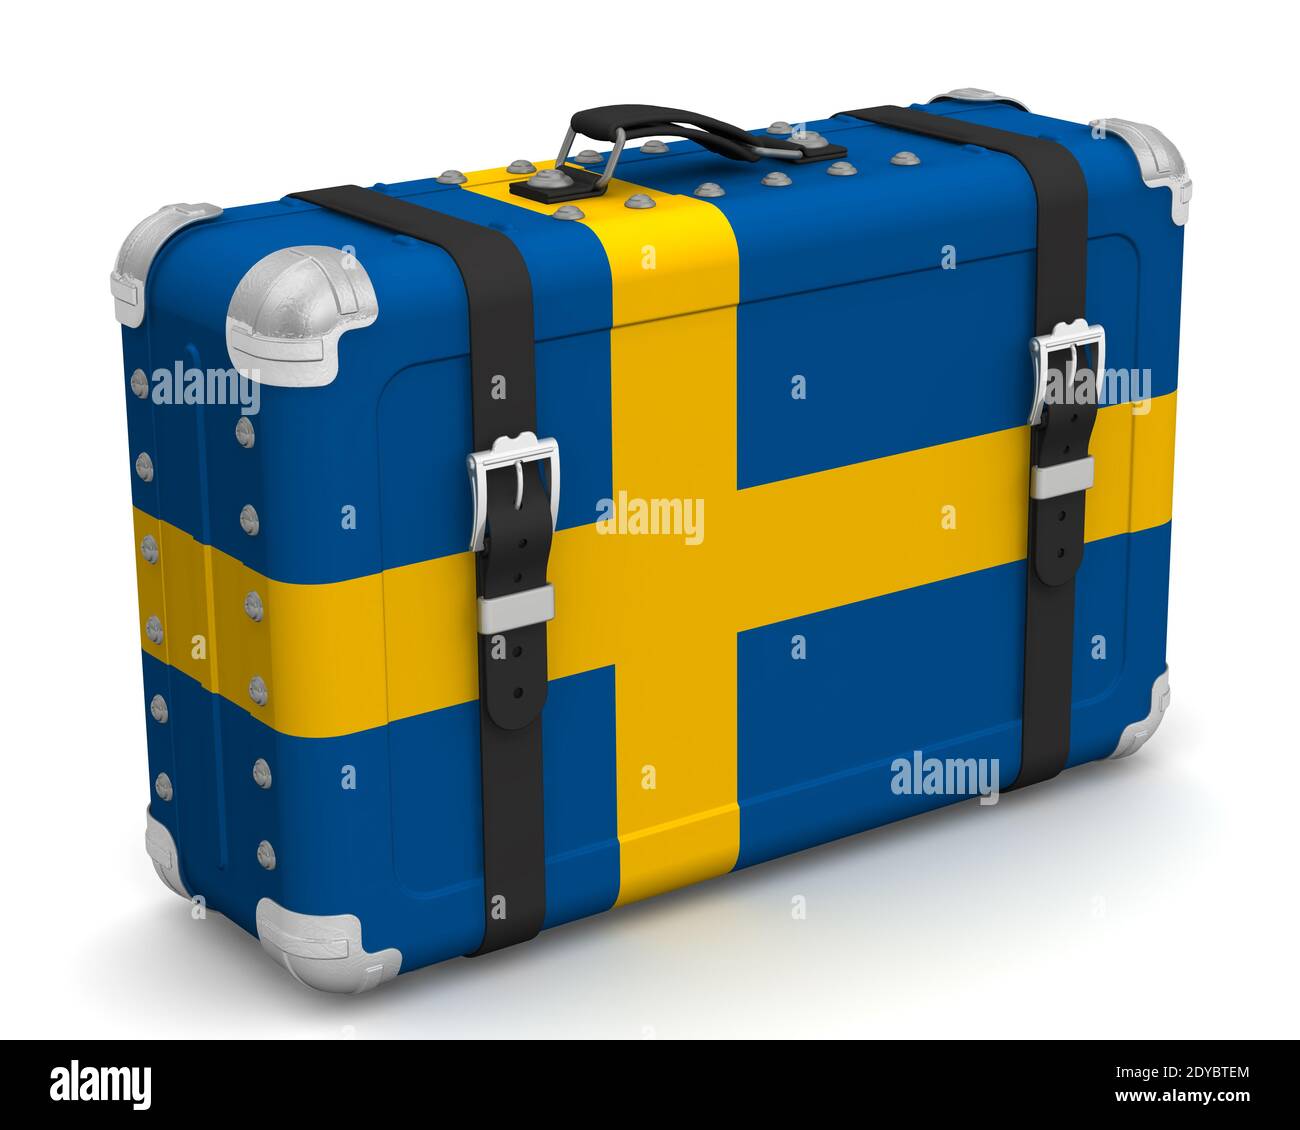 Valise élégante avec le drapeau national de la Suède. Valise rétro avec le drapeau national du Royaume de Suède se trouve sur une surface blanche Banque D'Images